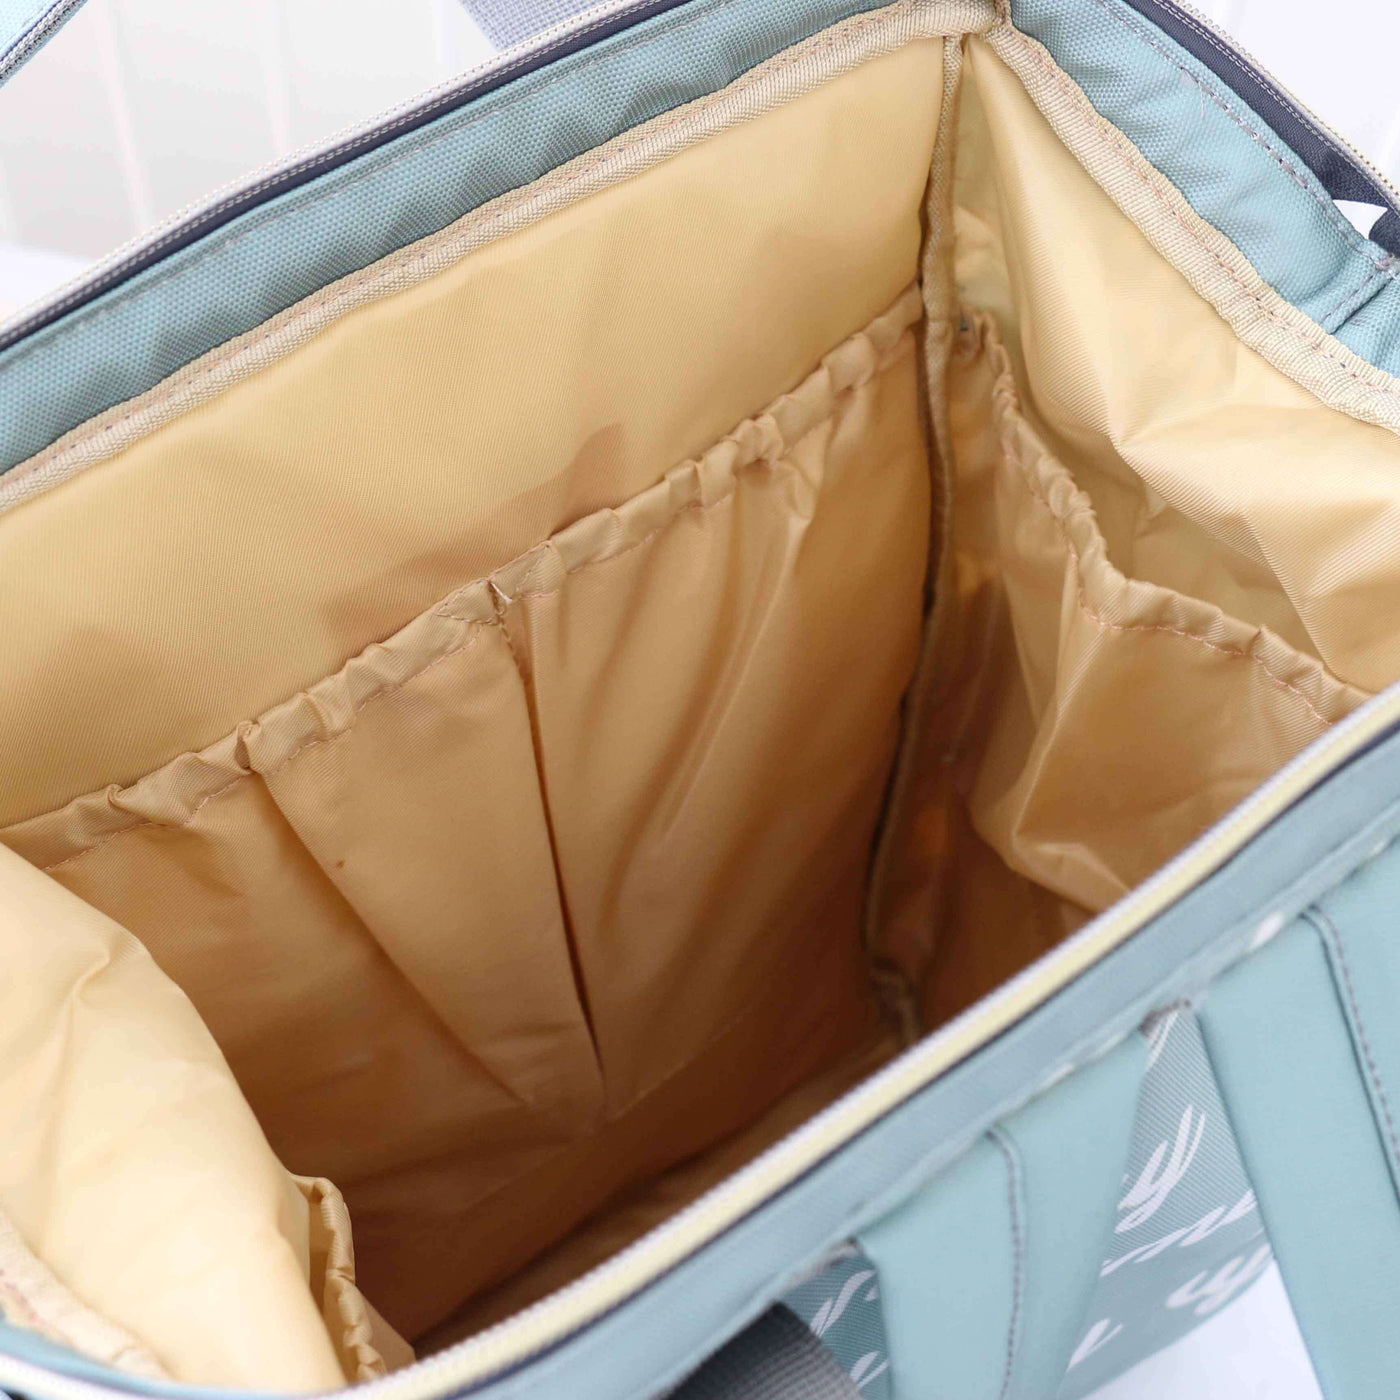 diaper bag backpack tan interior 